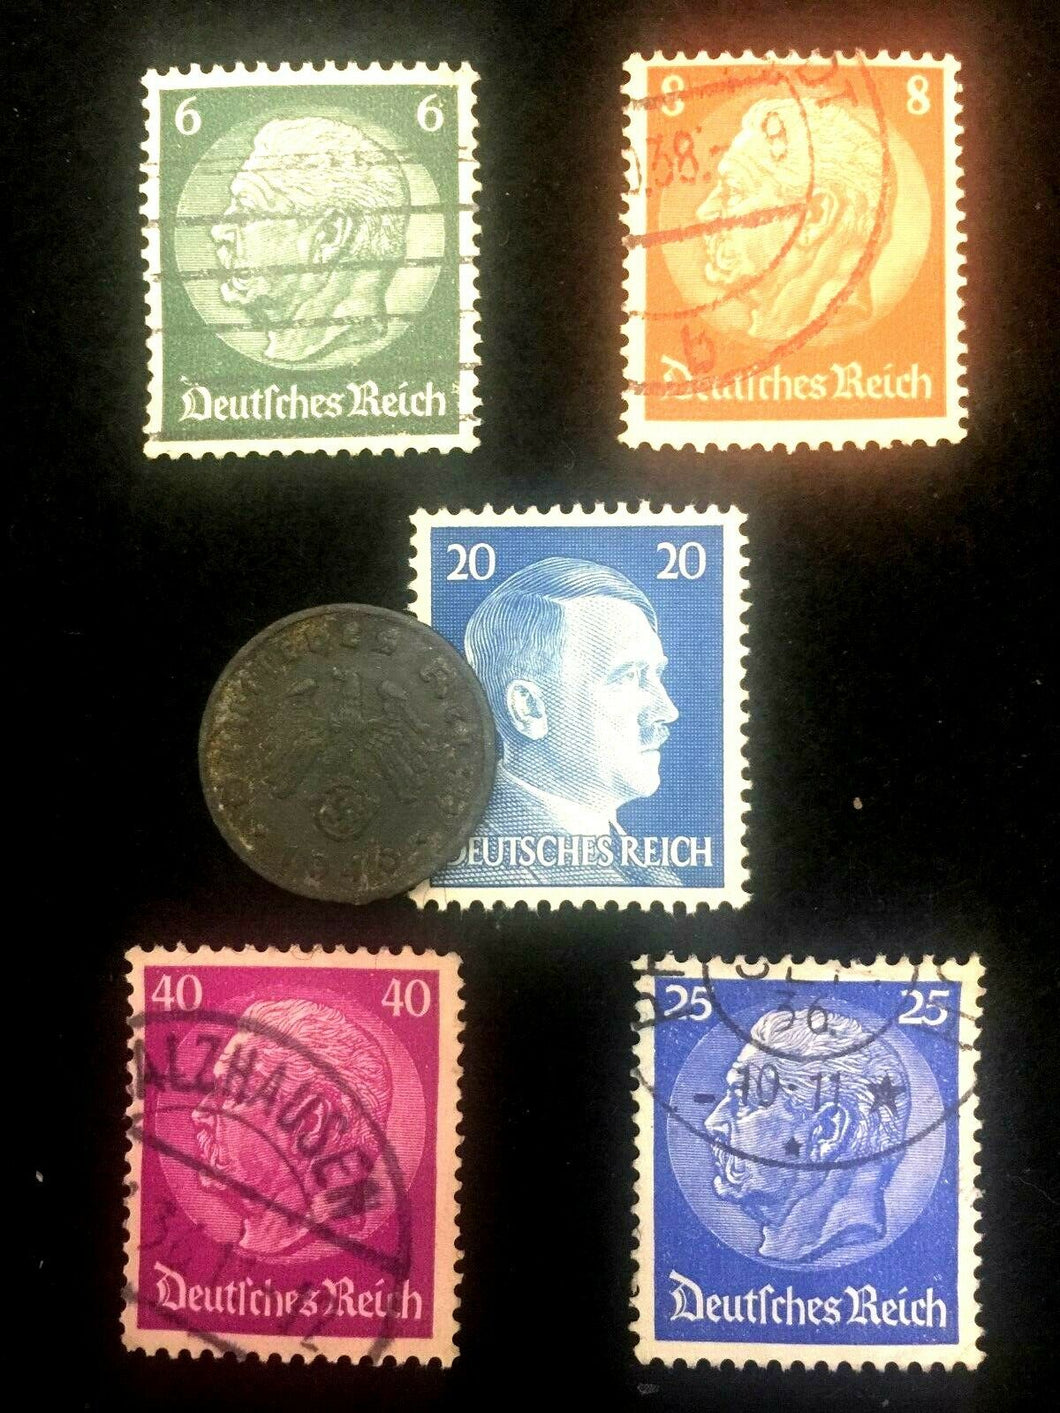 Rare Old WWII German War Coin Five Reichspfennig & Stamps World War 2 Artifact